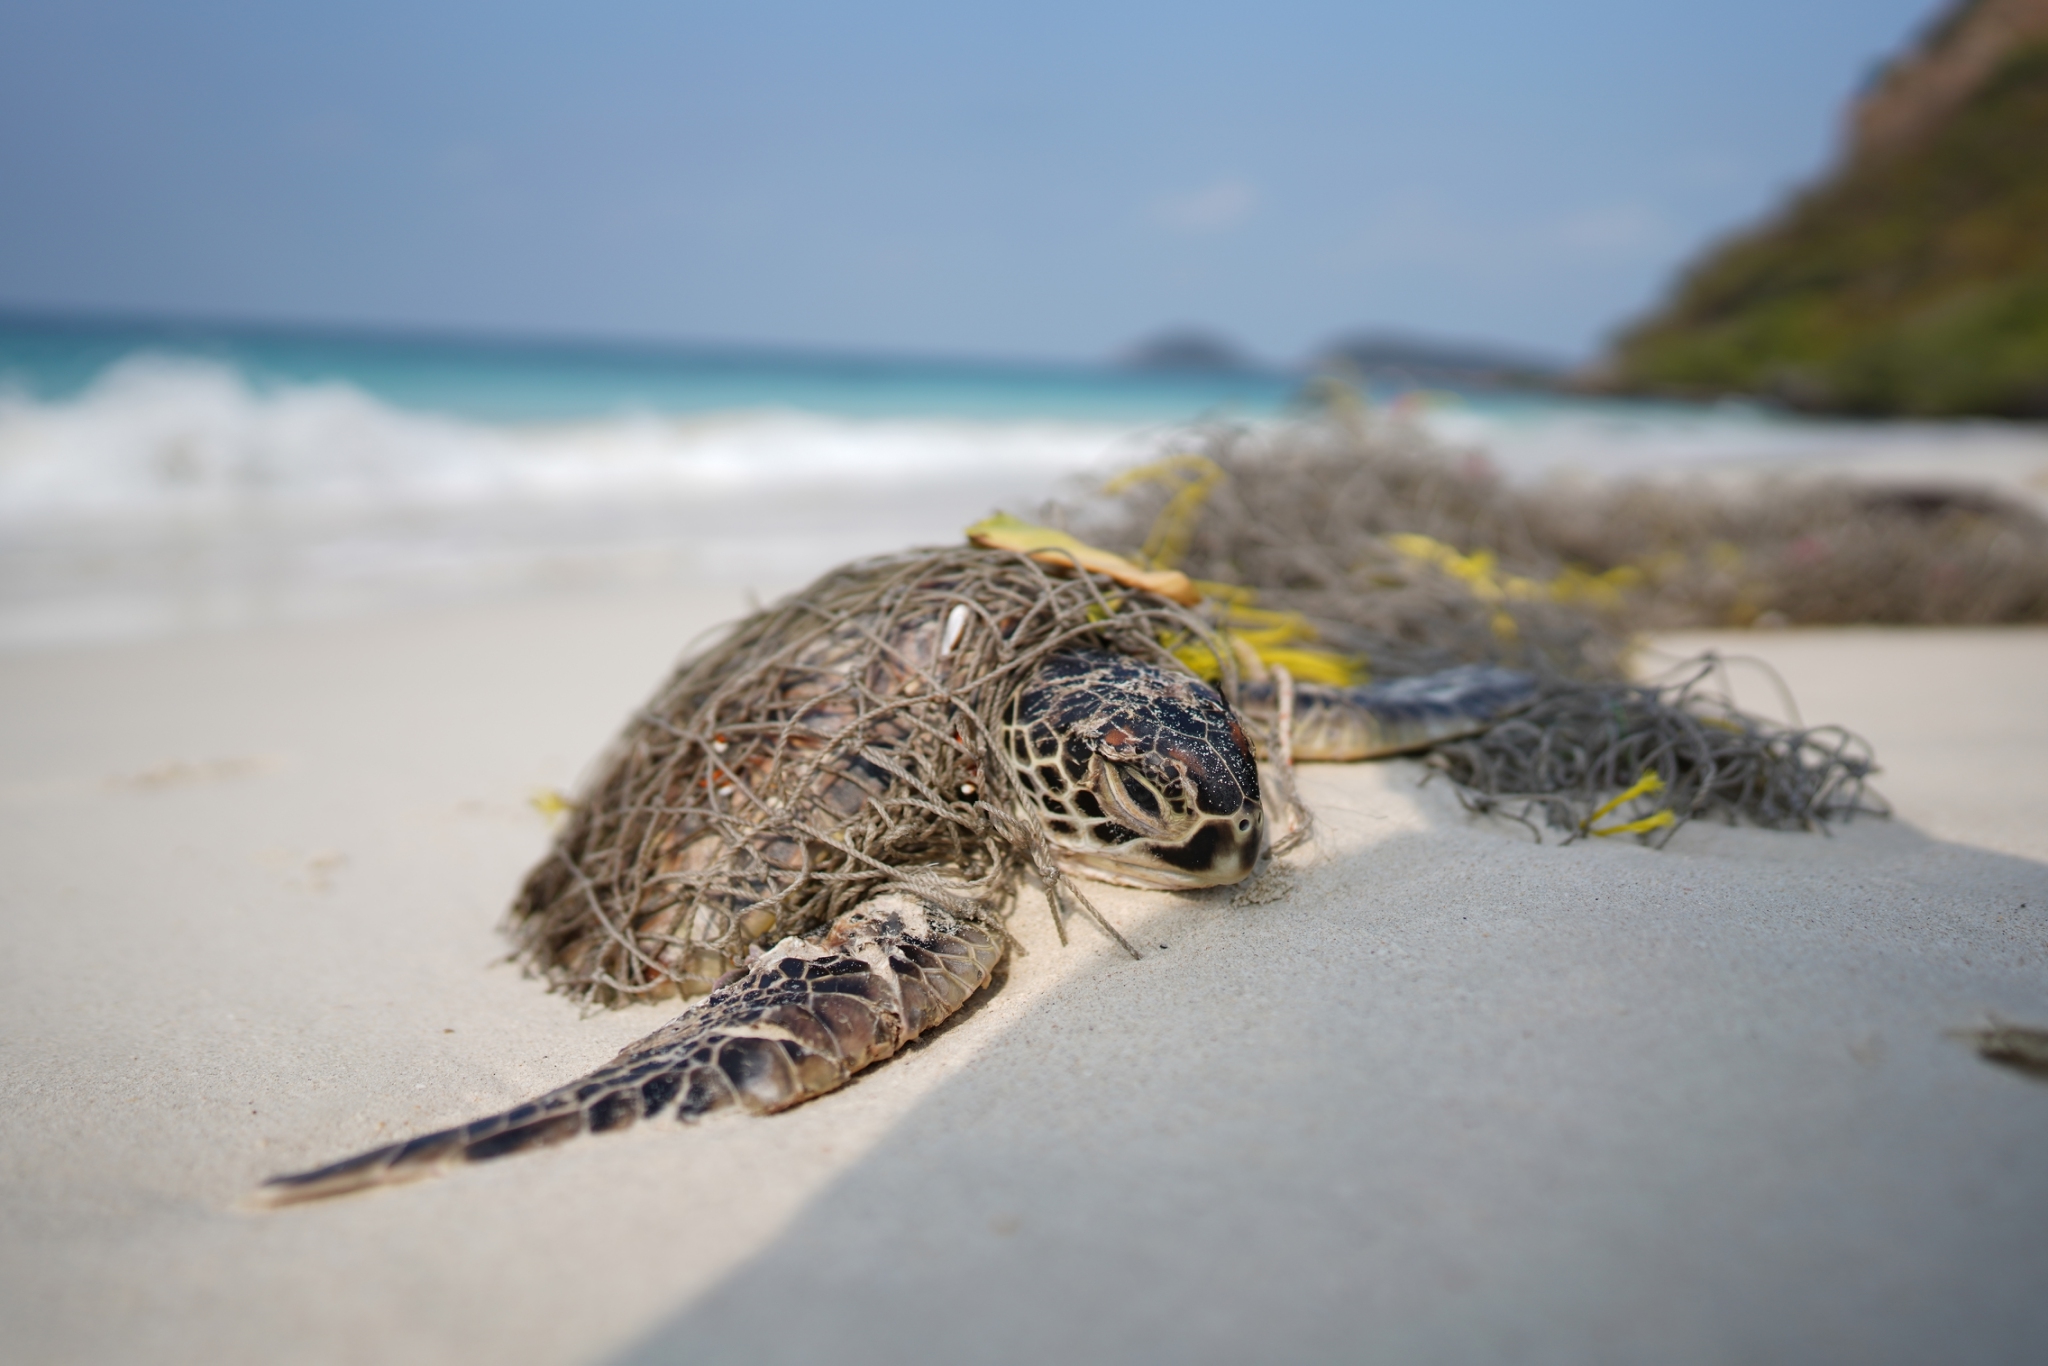 ย้อนรอย ปัญหาของท้องทะเลที่ส่งผลต่อสัตว์ทะเล นักวิชาการเผย พลาสติก ตัวทำลายสัตว์ทะเล